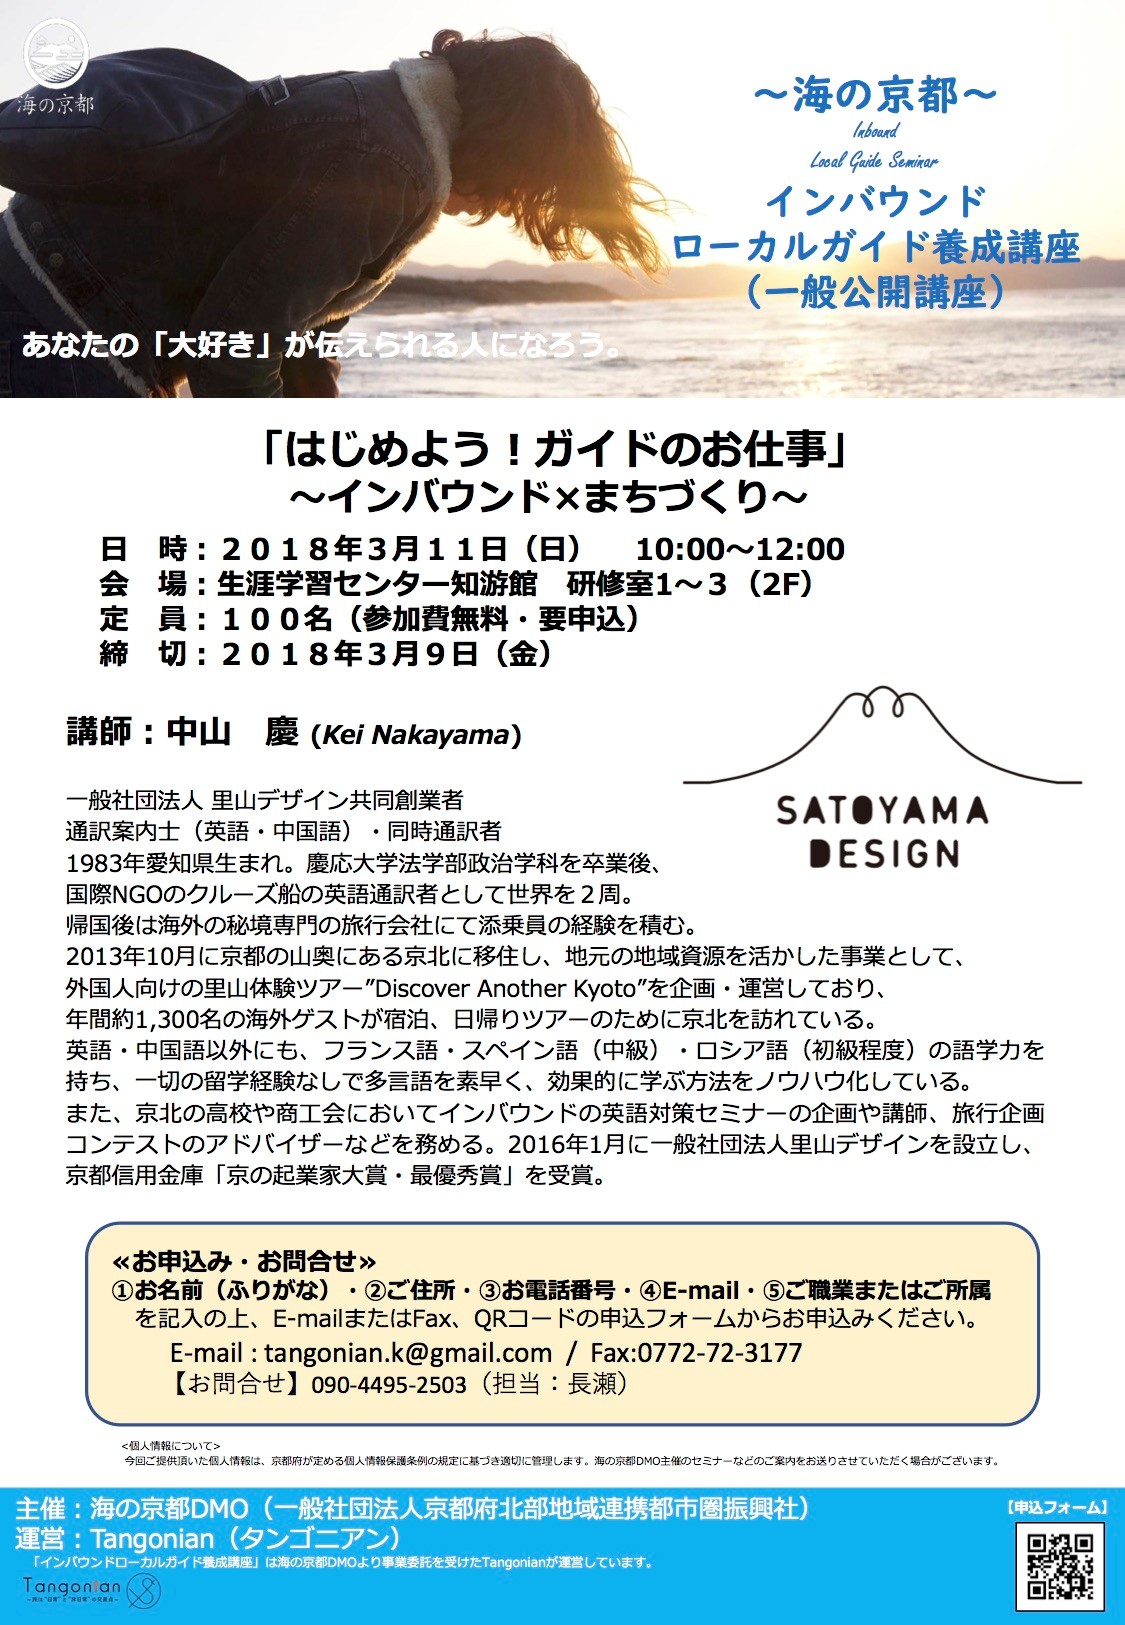 【一般公開講座】海の京都インバウンドローカルガイド養成講座の募集について